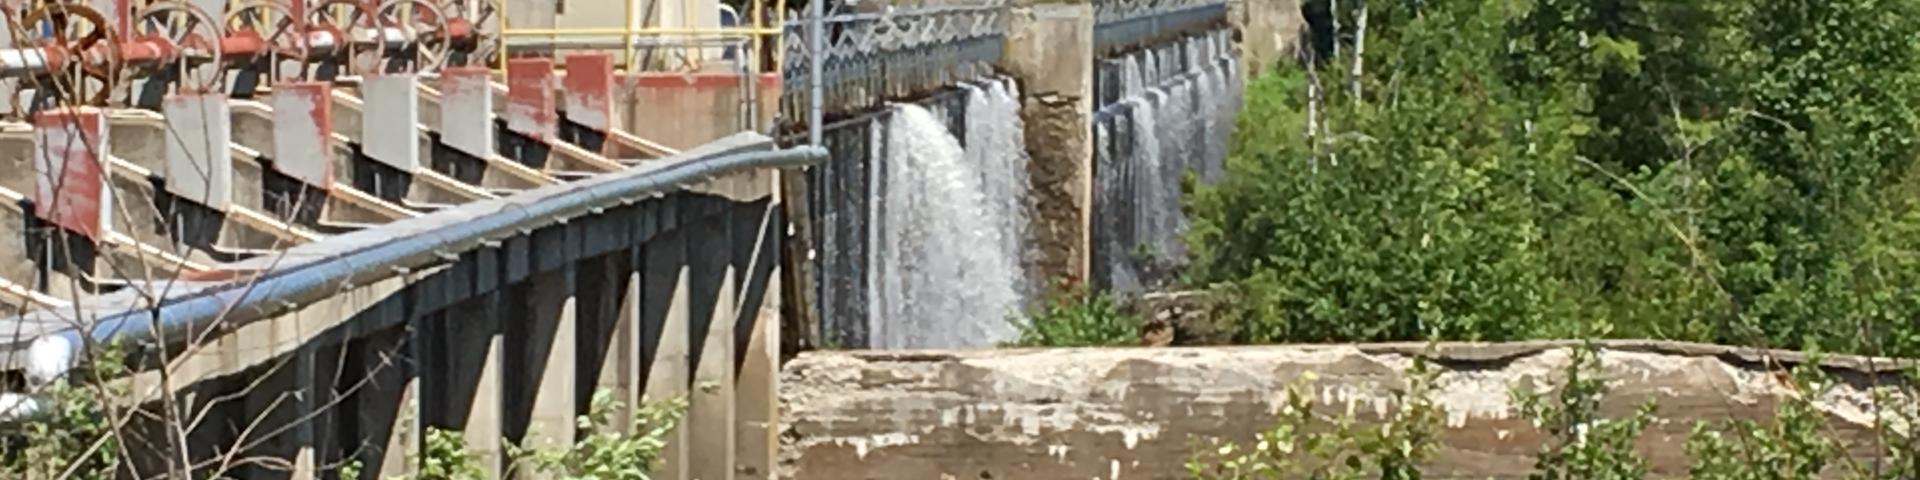 Image of Grand Falls Dam